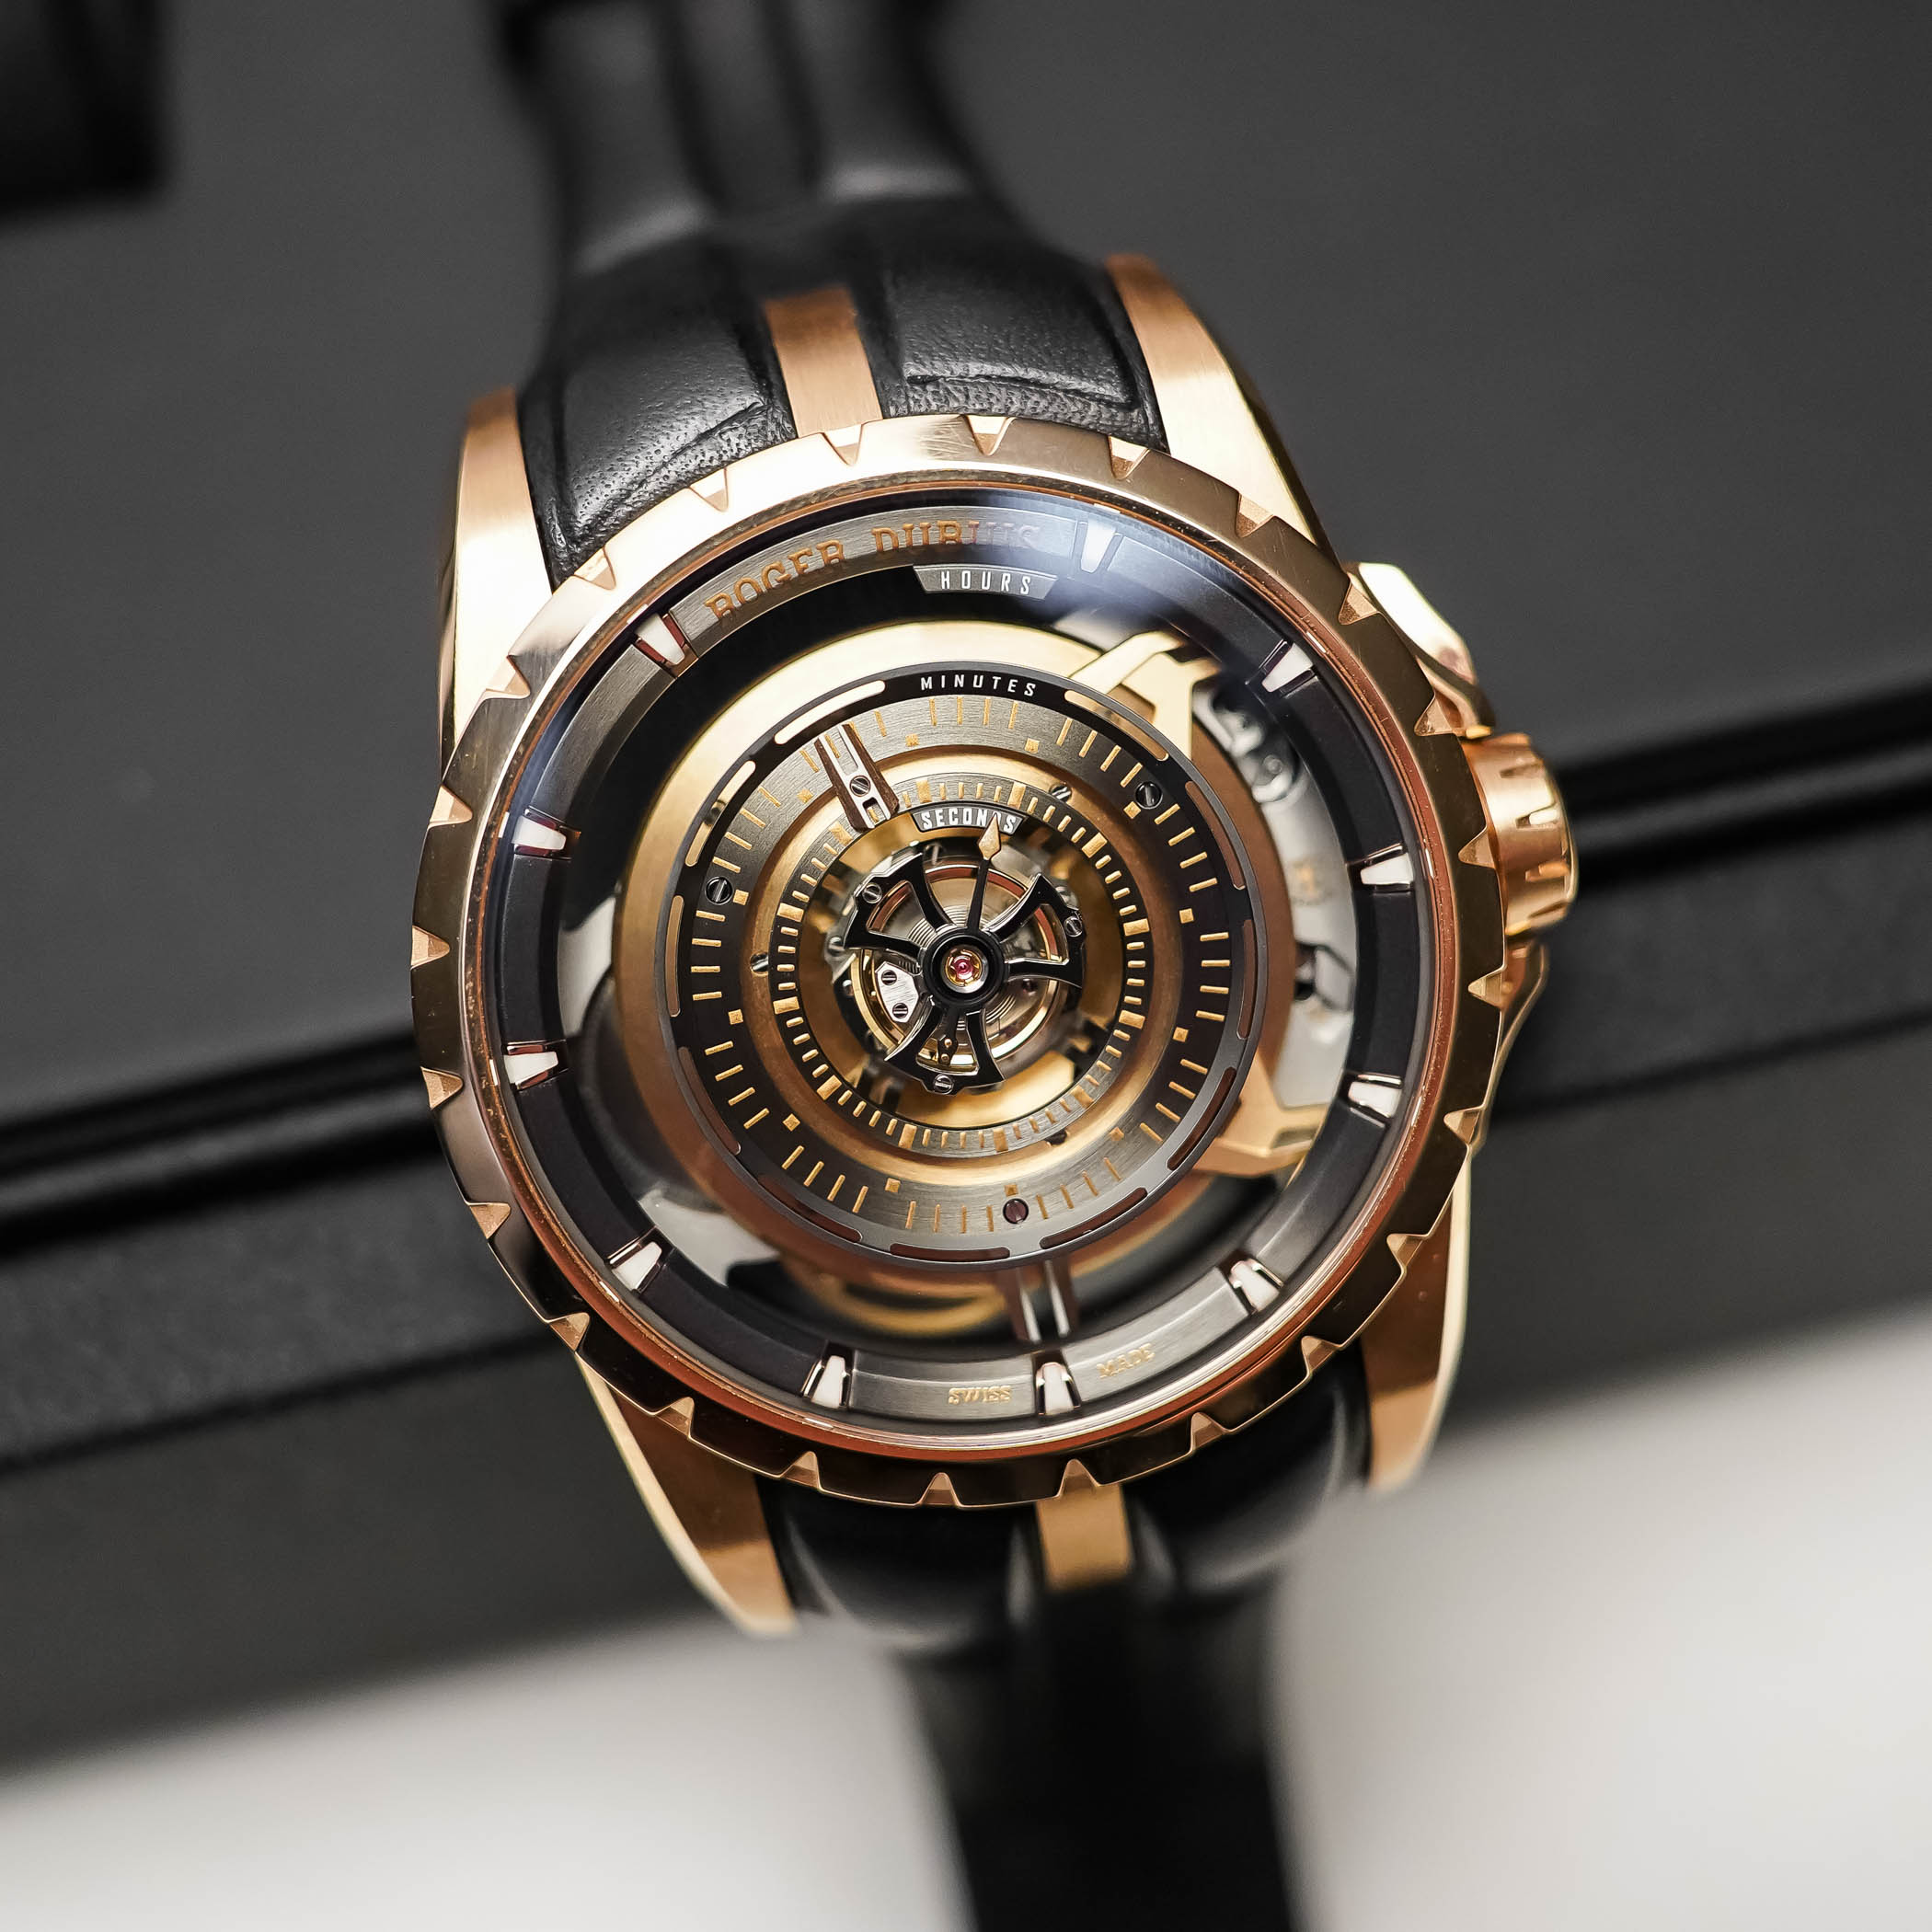 Взгляд из будущего: почему часы Roger Dubuis Orbis in Machina Central Monotourbillon вызывают безумный интерес в мире моды и технологий